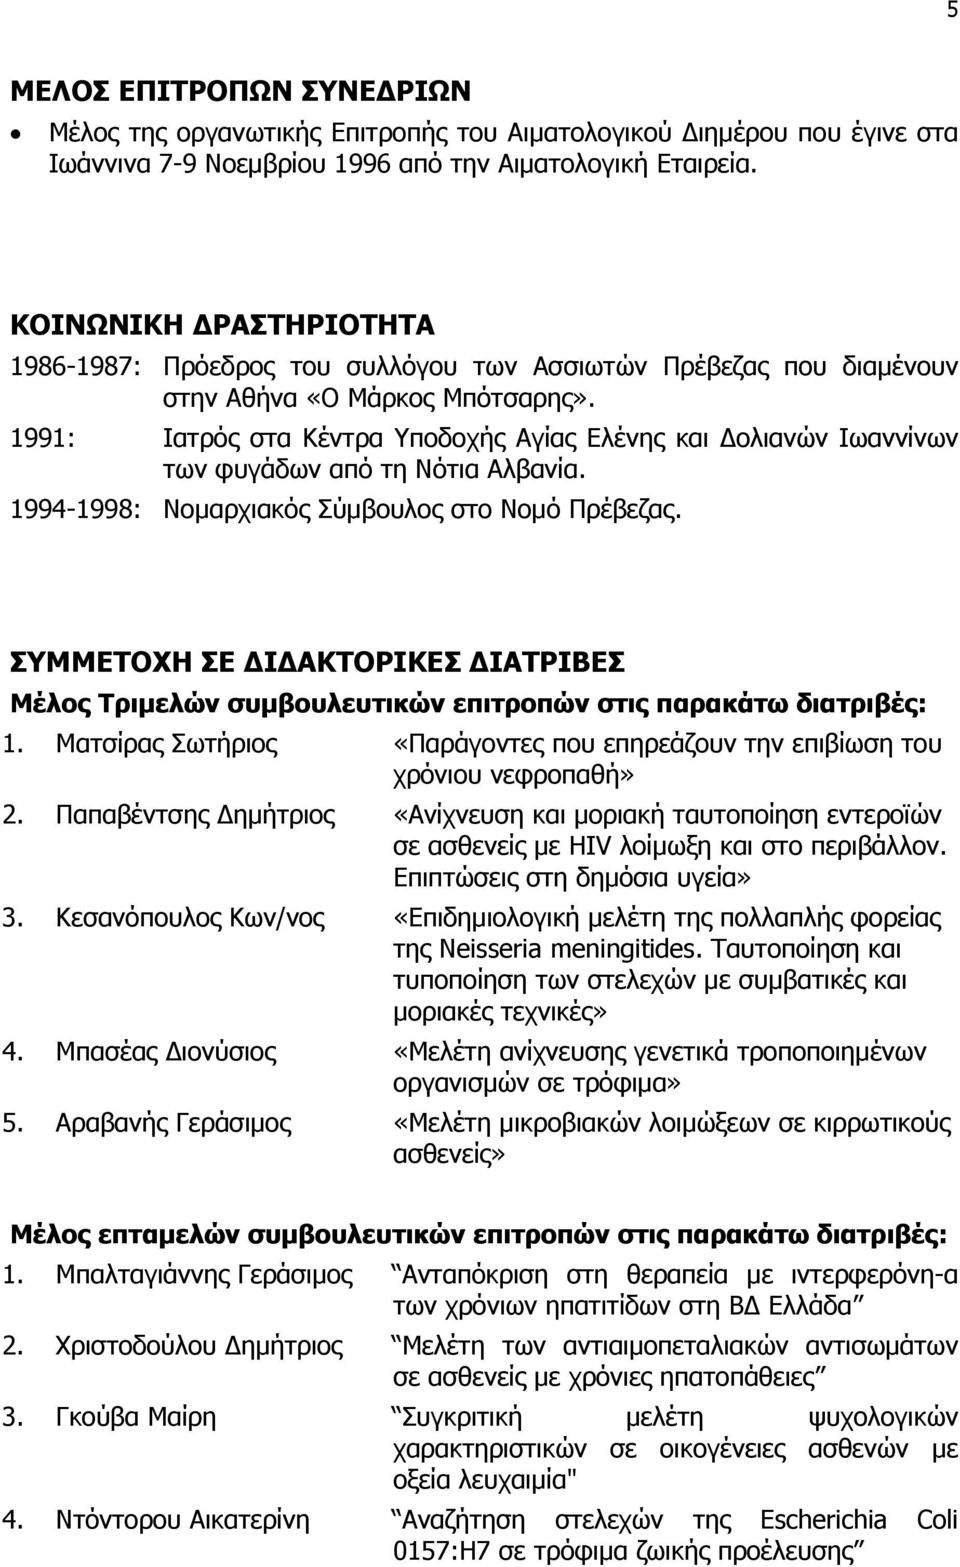 1991: Ιατρός στα Κέντρα Υποδοχής Αγίας Ελένης και ολιανών Ιωαννίνων των φυγάδων από τη Νότια Αλβανία. 1994-1998: Νομαρχιακός Σύμβουλος στο Νομό Πρέβεζας.